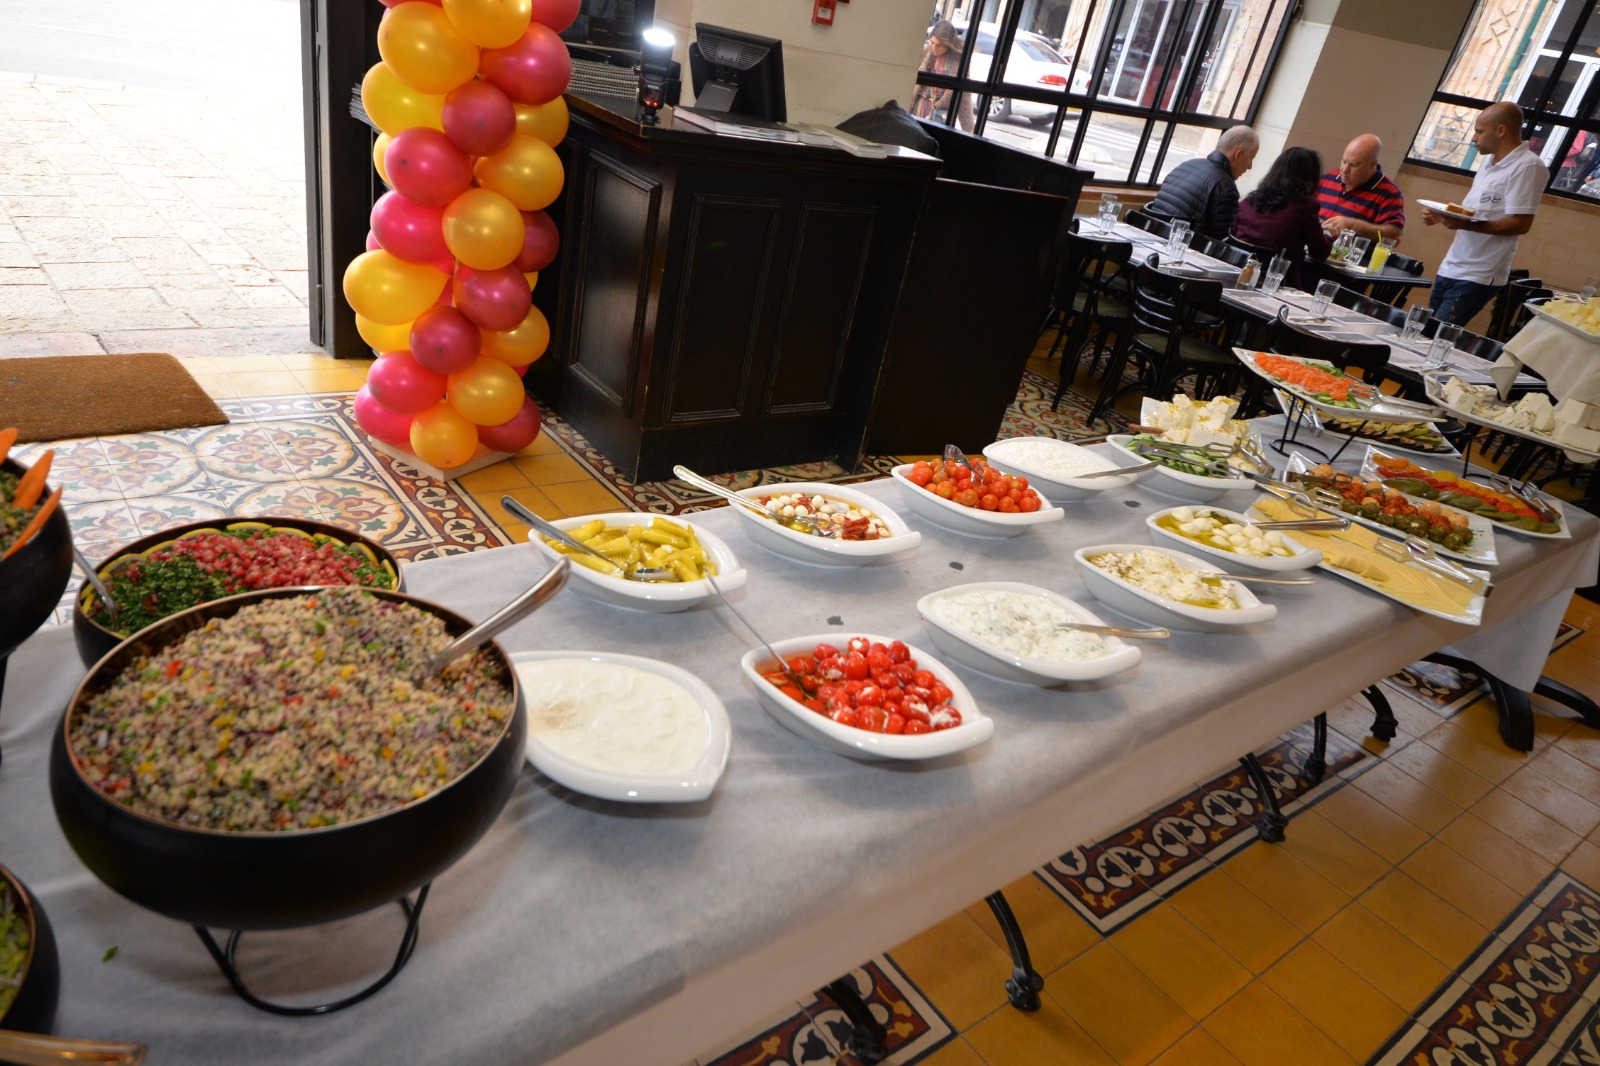 اليوم الجمعة أنتم على موعد مع وجبات الافطار الشهية في مطعم حاج كحيل بيافا